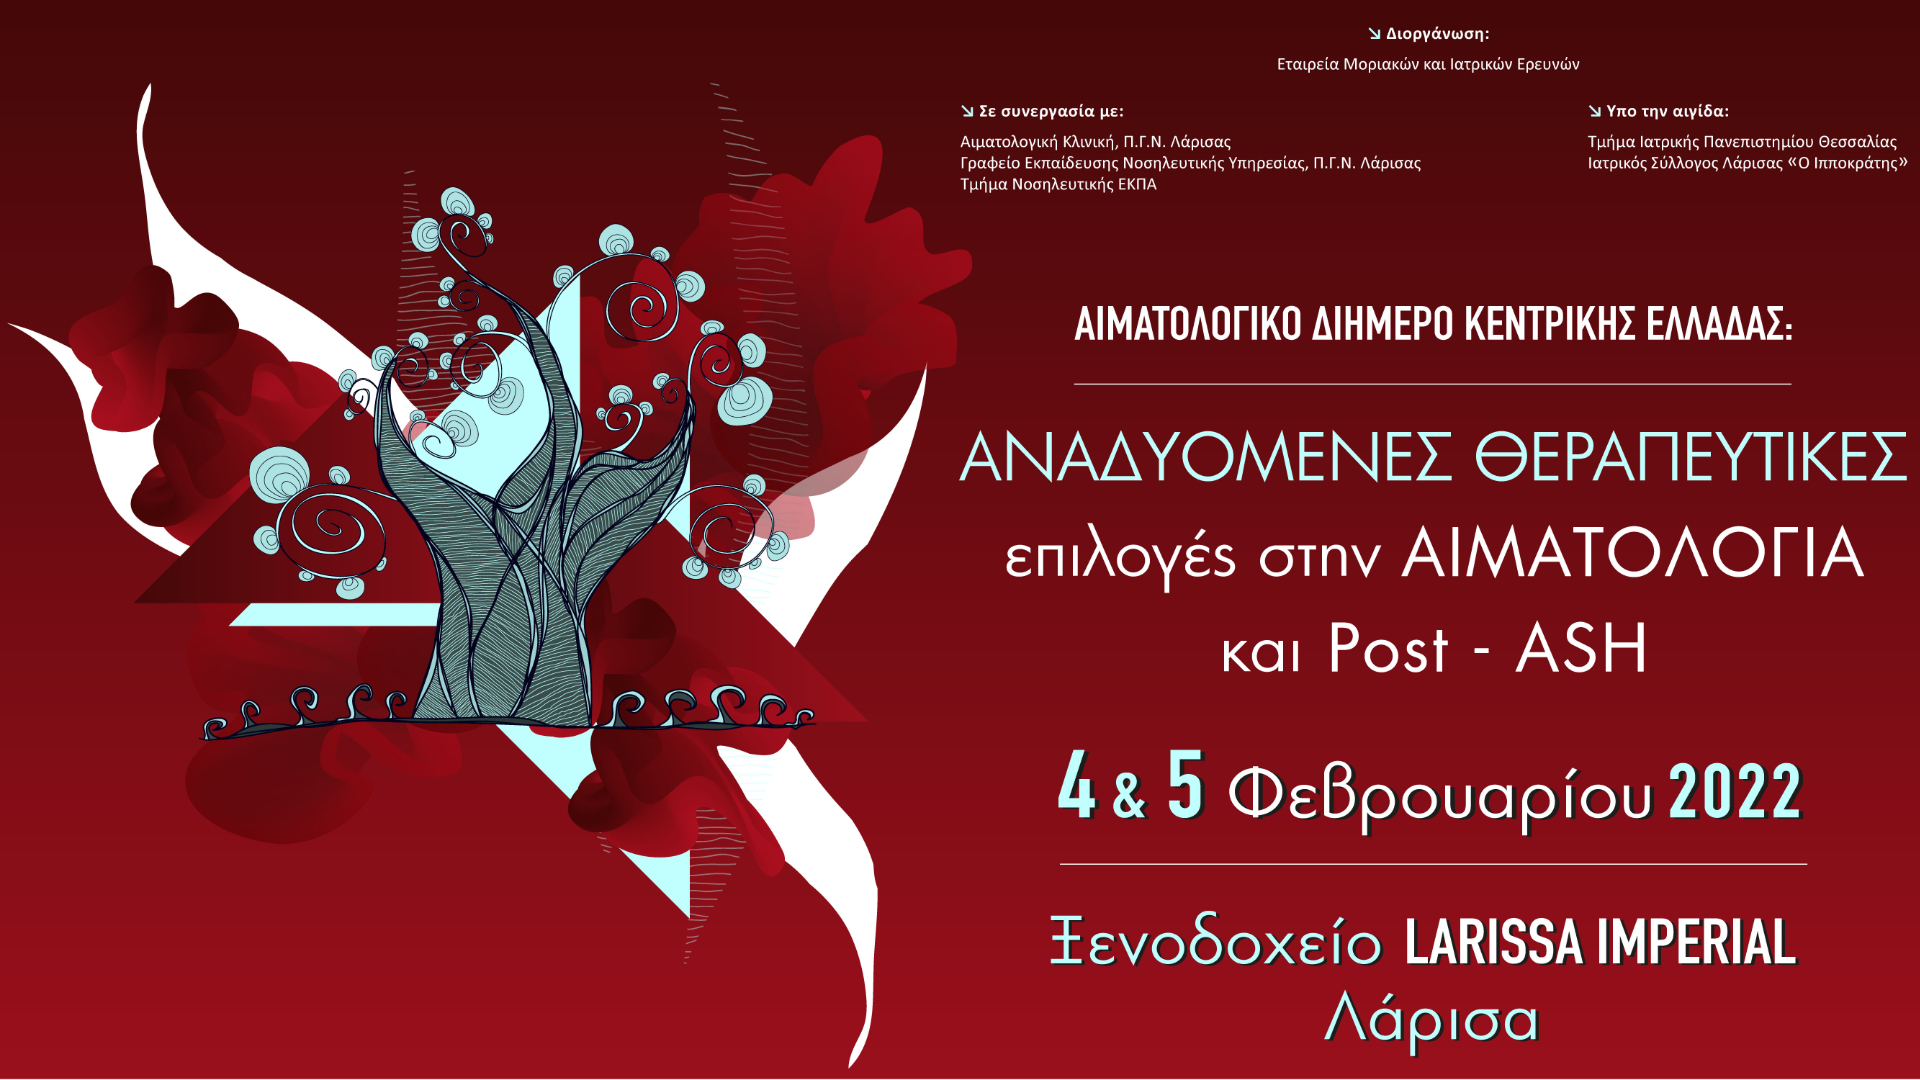 Αιματολογικό Διήμερο Κεντρικής Ελλάδας - Αναδυόμενες Θεραπευτικές Επιλογές στην Αιματολογία και Post-ASH